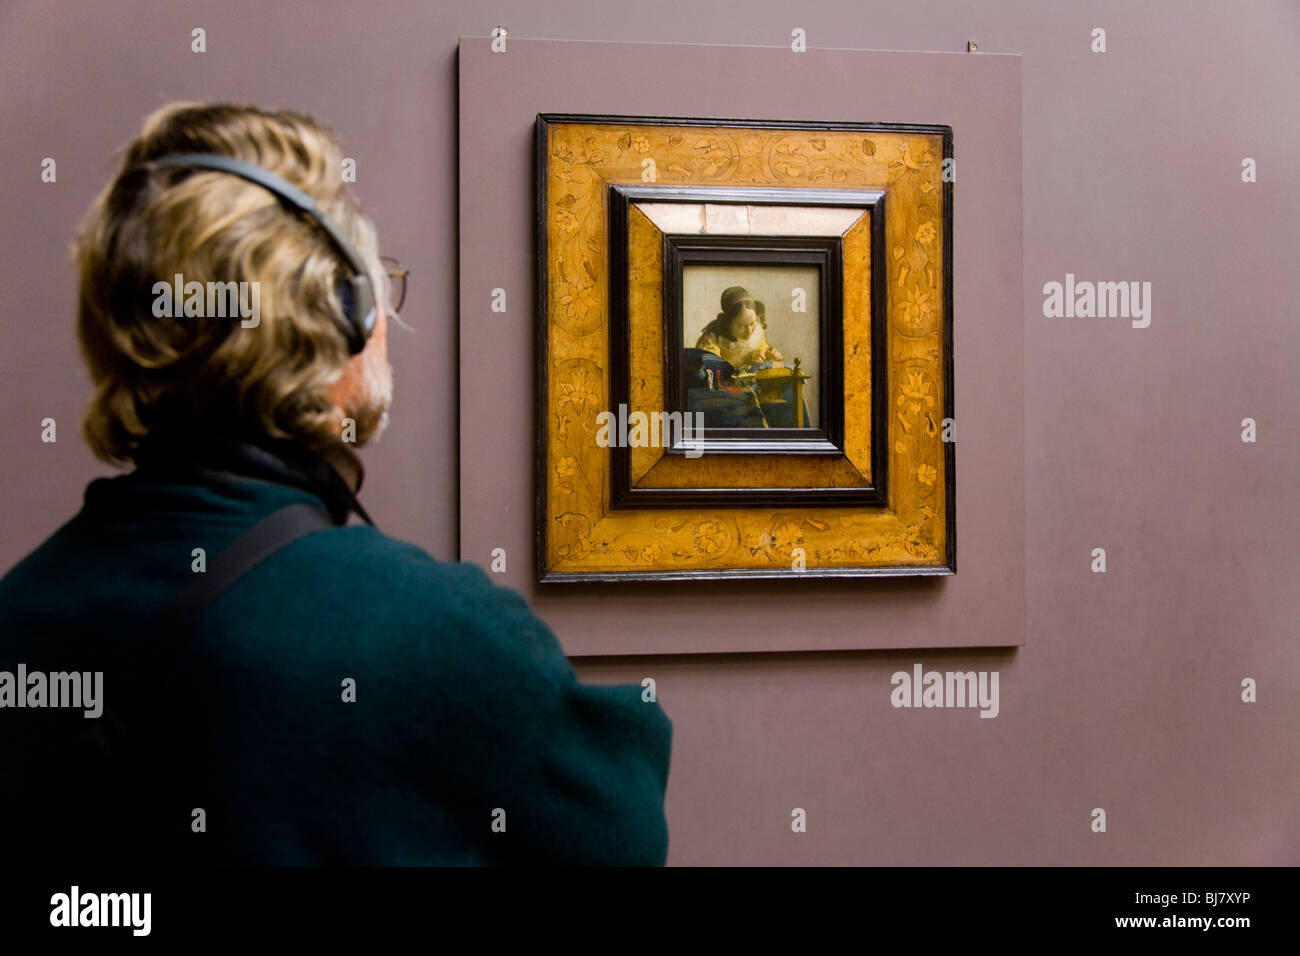 Männliche Touristen tragen Kopfhörer / Kopfhörer Handbuch mit Blick auf die Spitzenklöpplerin Gemälde von Vermeer. Das Louvre, Paris. Frankreich Stockfoto